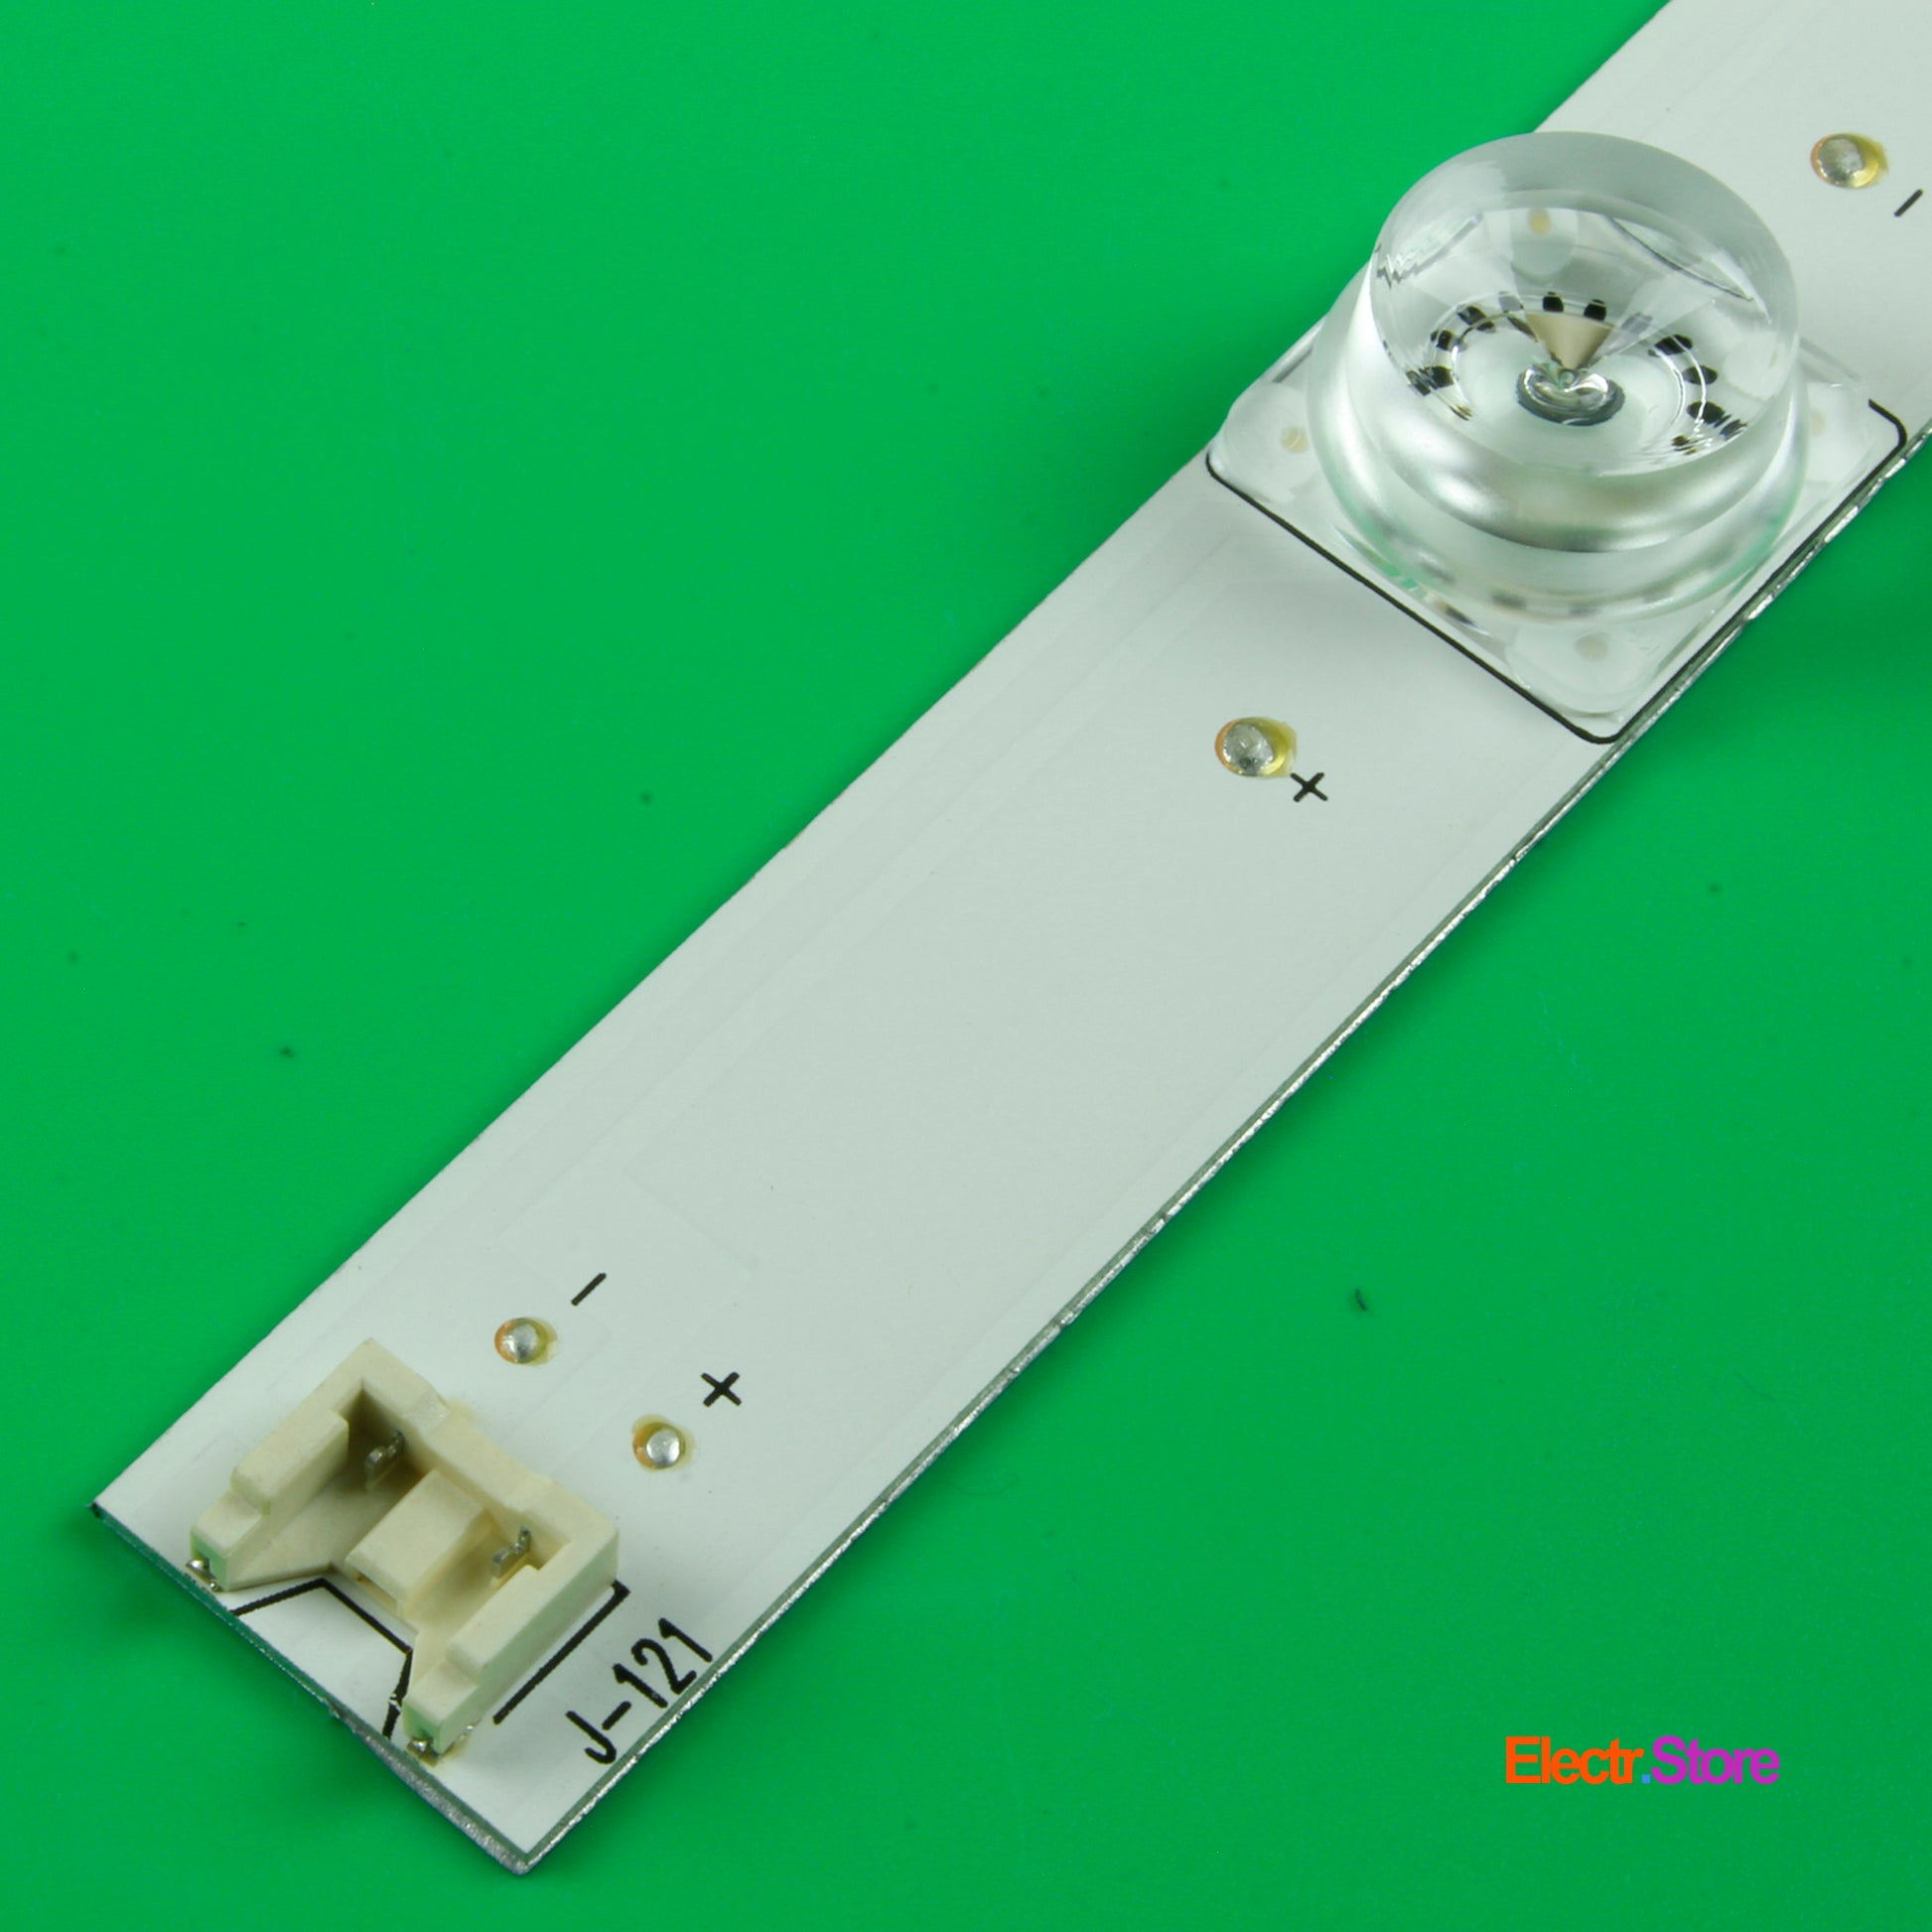 LED Backlight Strip Kits, Innotek DRT 3.0 32"_A/B Type Rev0.2, AGF78400001, 6916L-1974A/6916L-1975A (Square Pedstal, 3 pcs/kit), for TV 32" 32" DRT 3.0 32"_A/B Type Rev0.2 LED Backlights LG Electr.Store